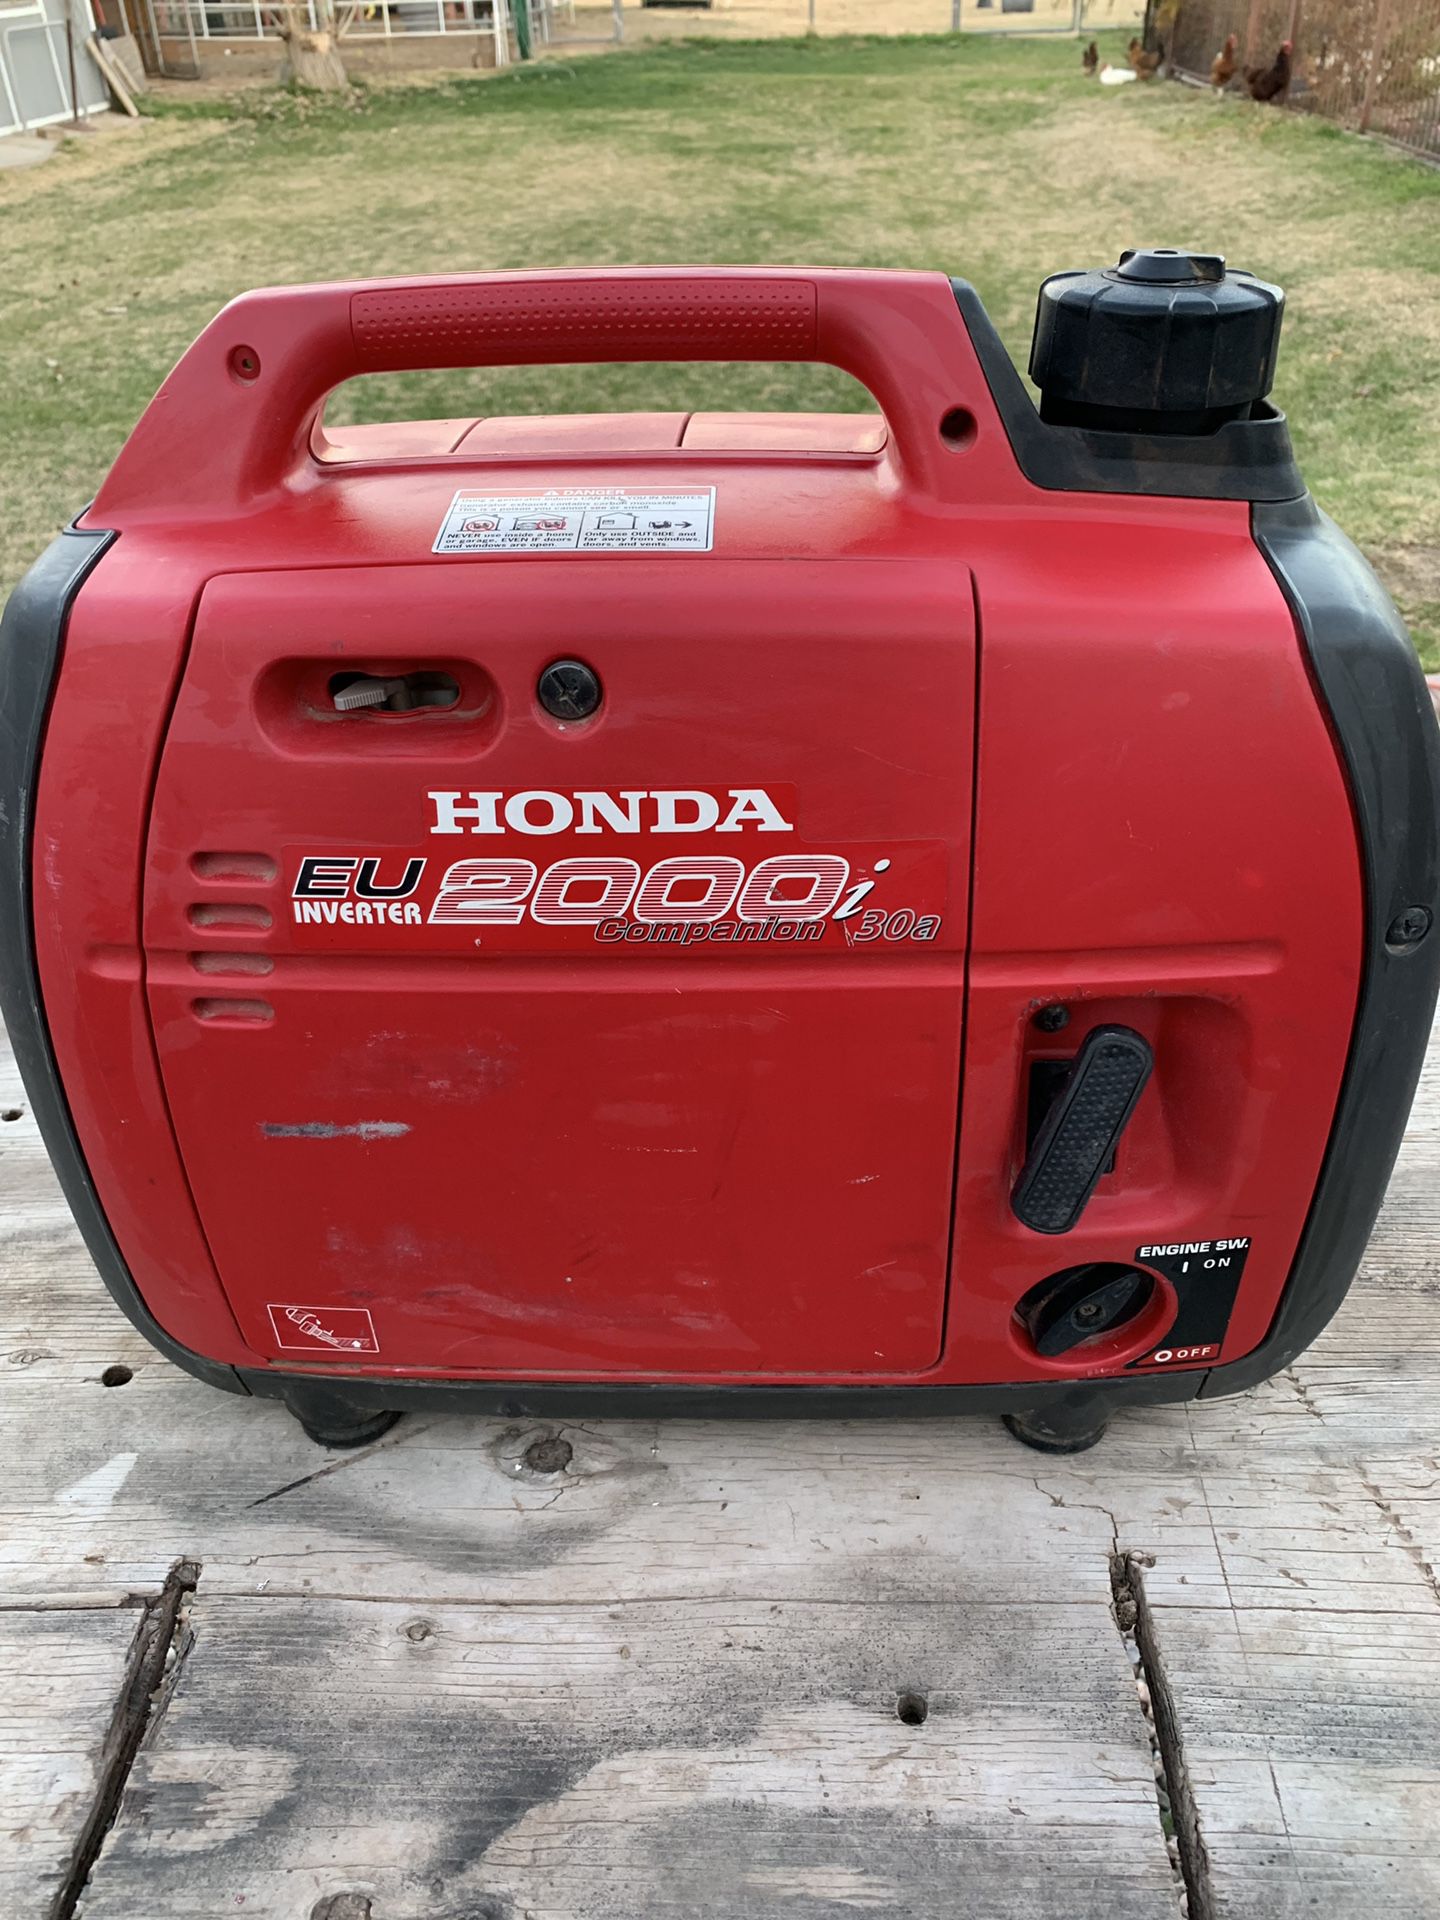 Honda 2000i generator has the 30 amp plugin runs great